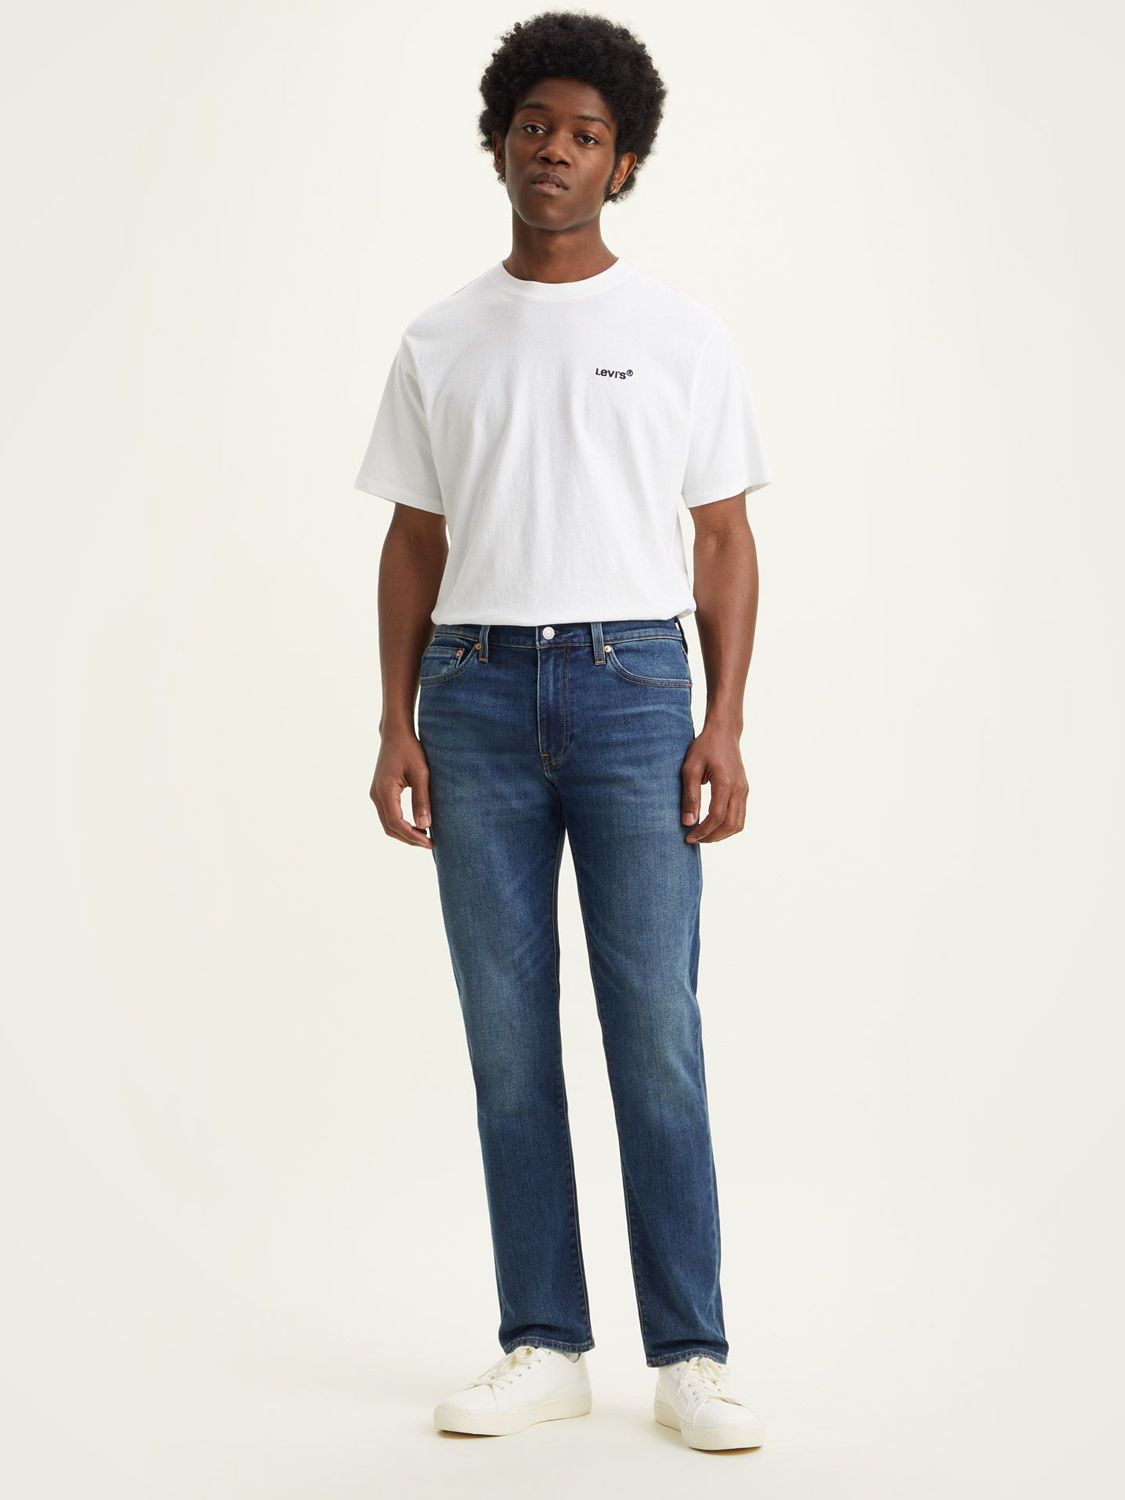 Levi's 511 Slim Fit Jeans, Medium Indigo